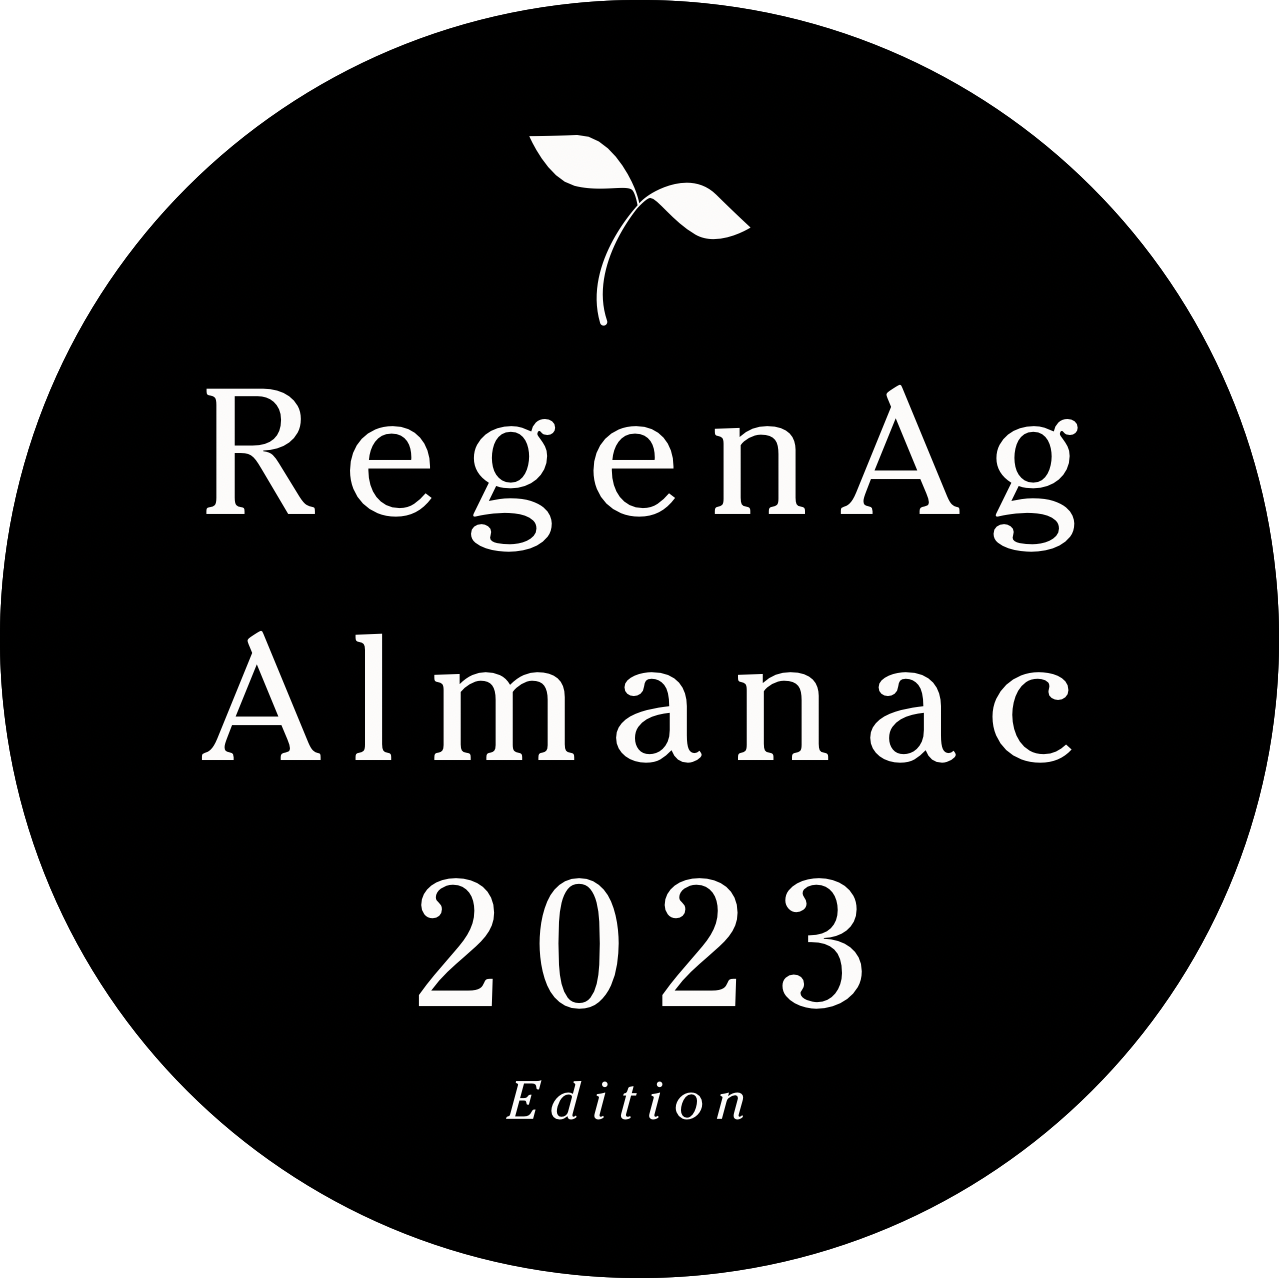 RegenAg Almanac